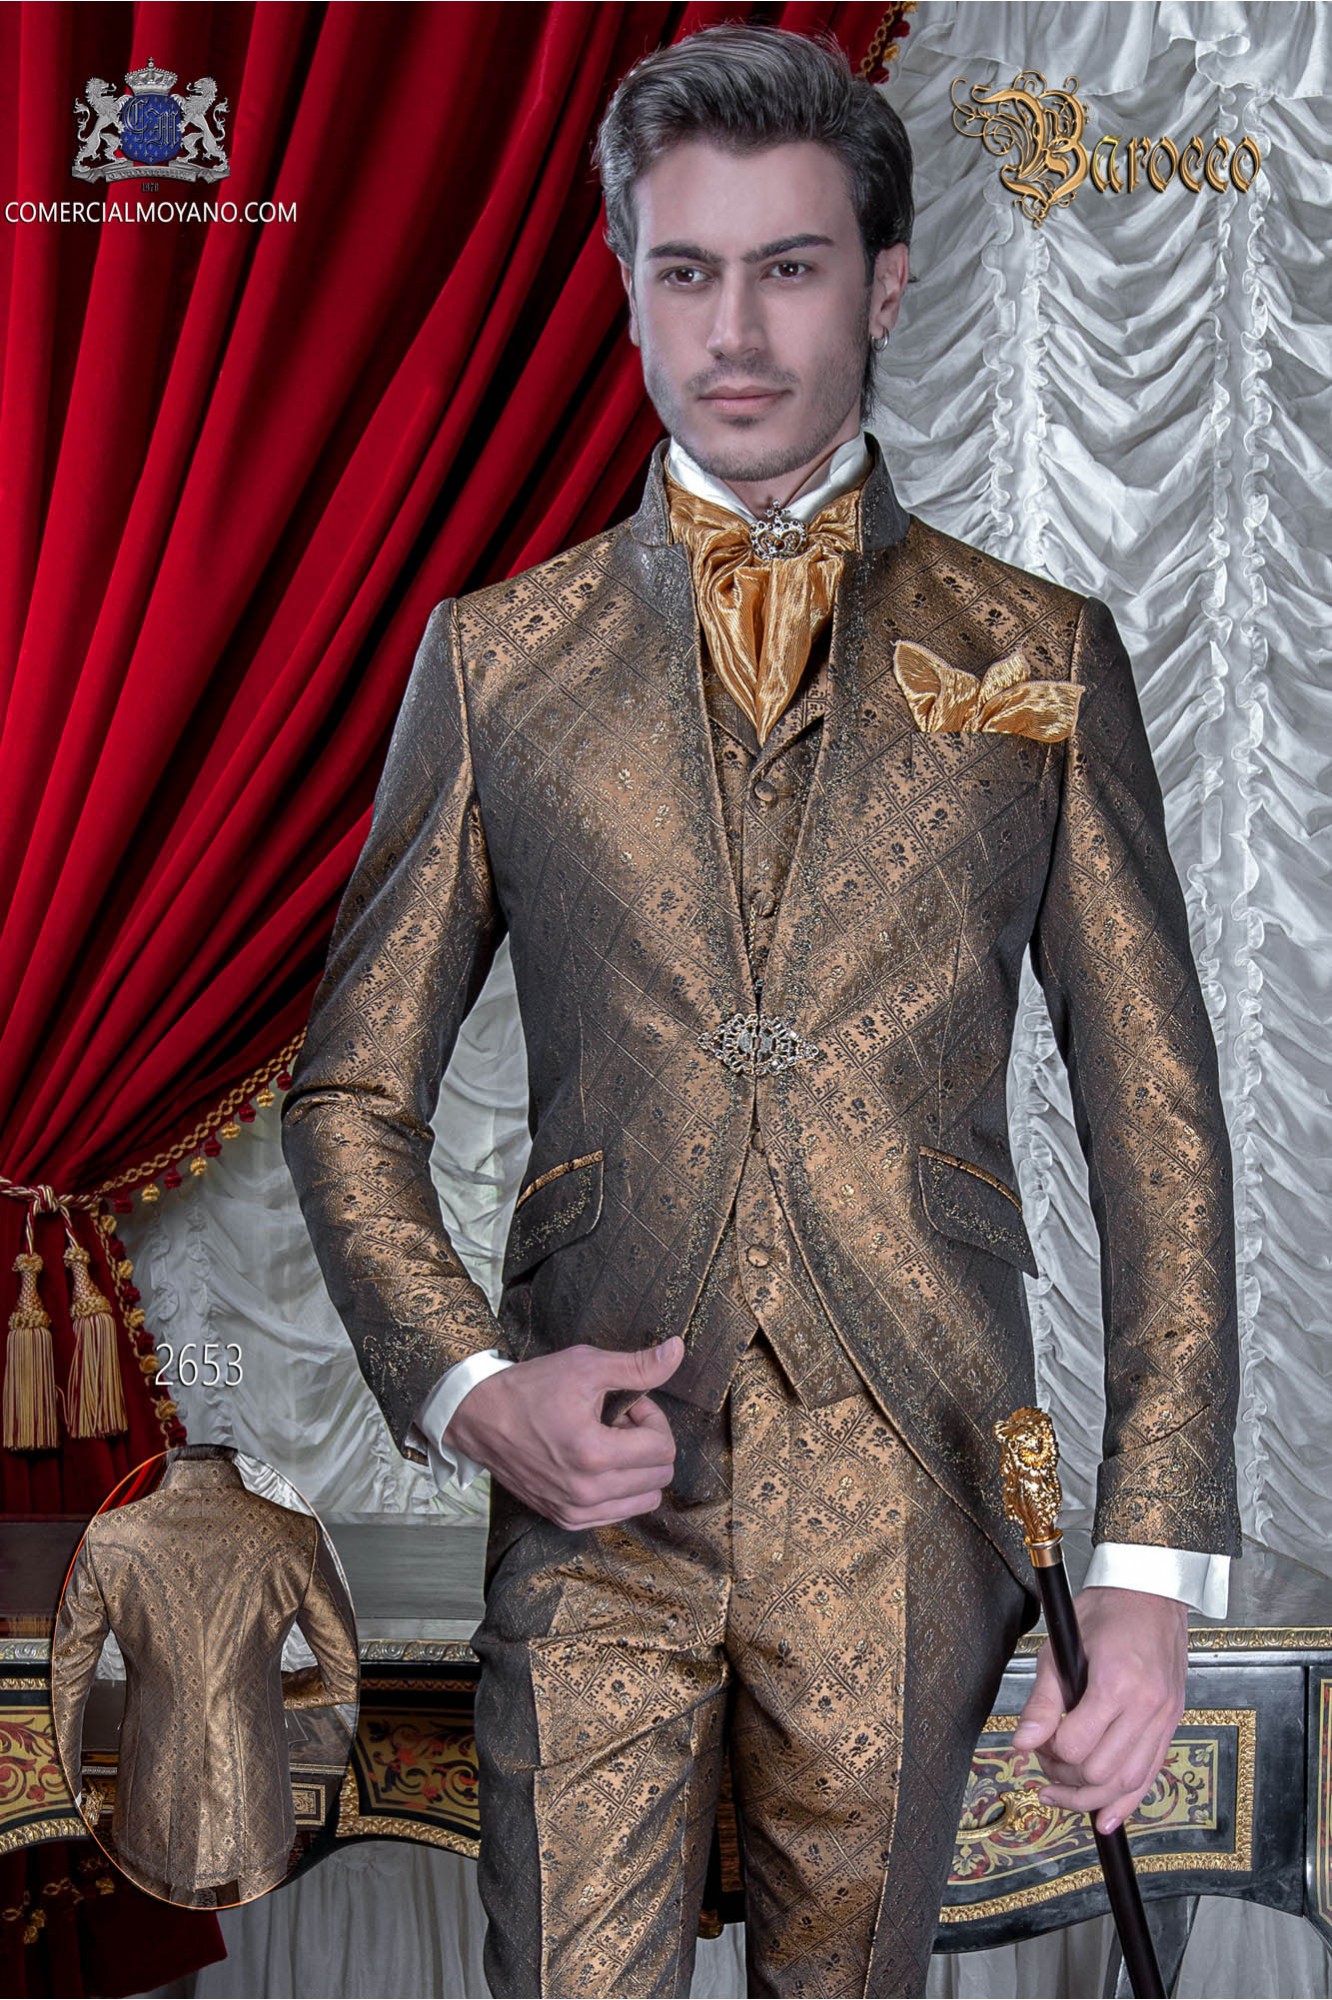 Traje de novio barroco, levita de época cuello mao en tejido jacquard dorado con bordados dorados y broche de cristal modelo: 2653 Mario Moyano colección Barroco